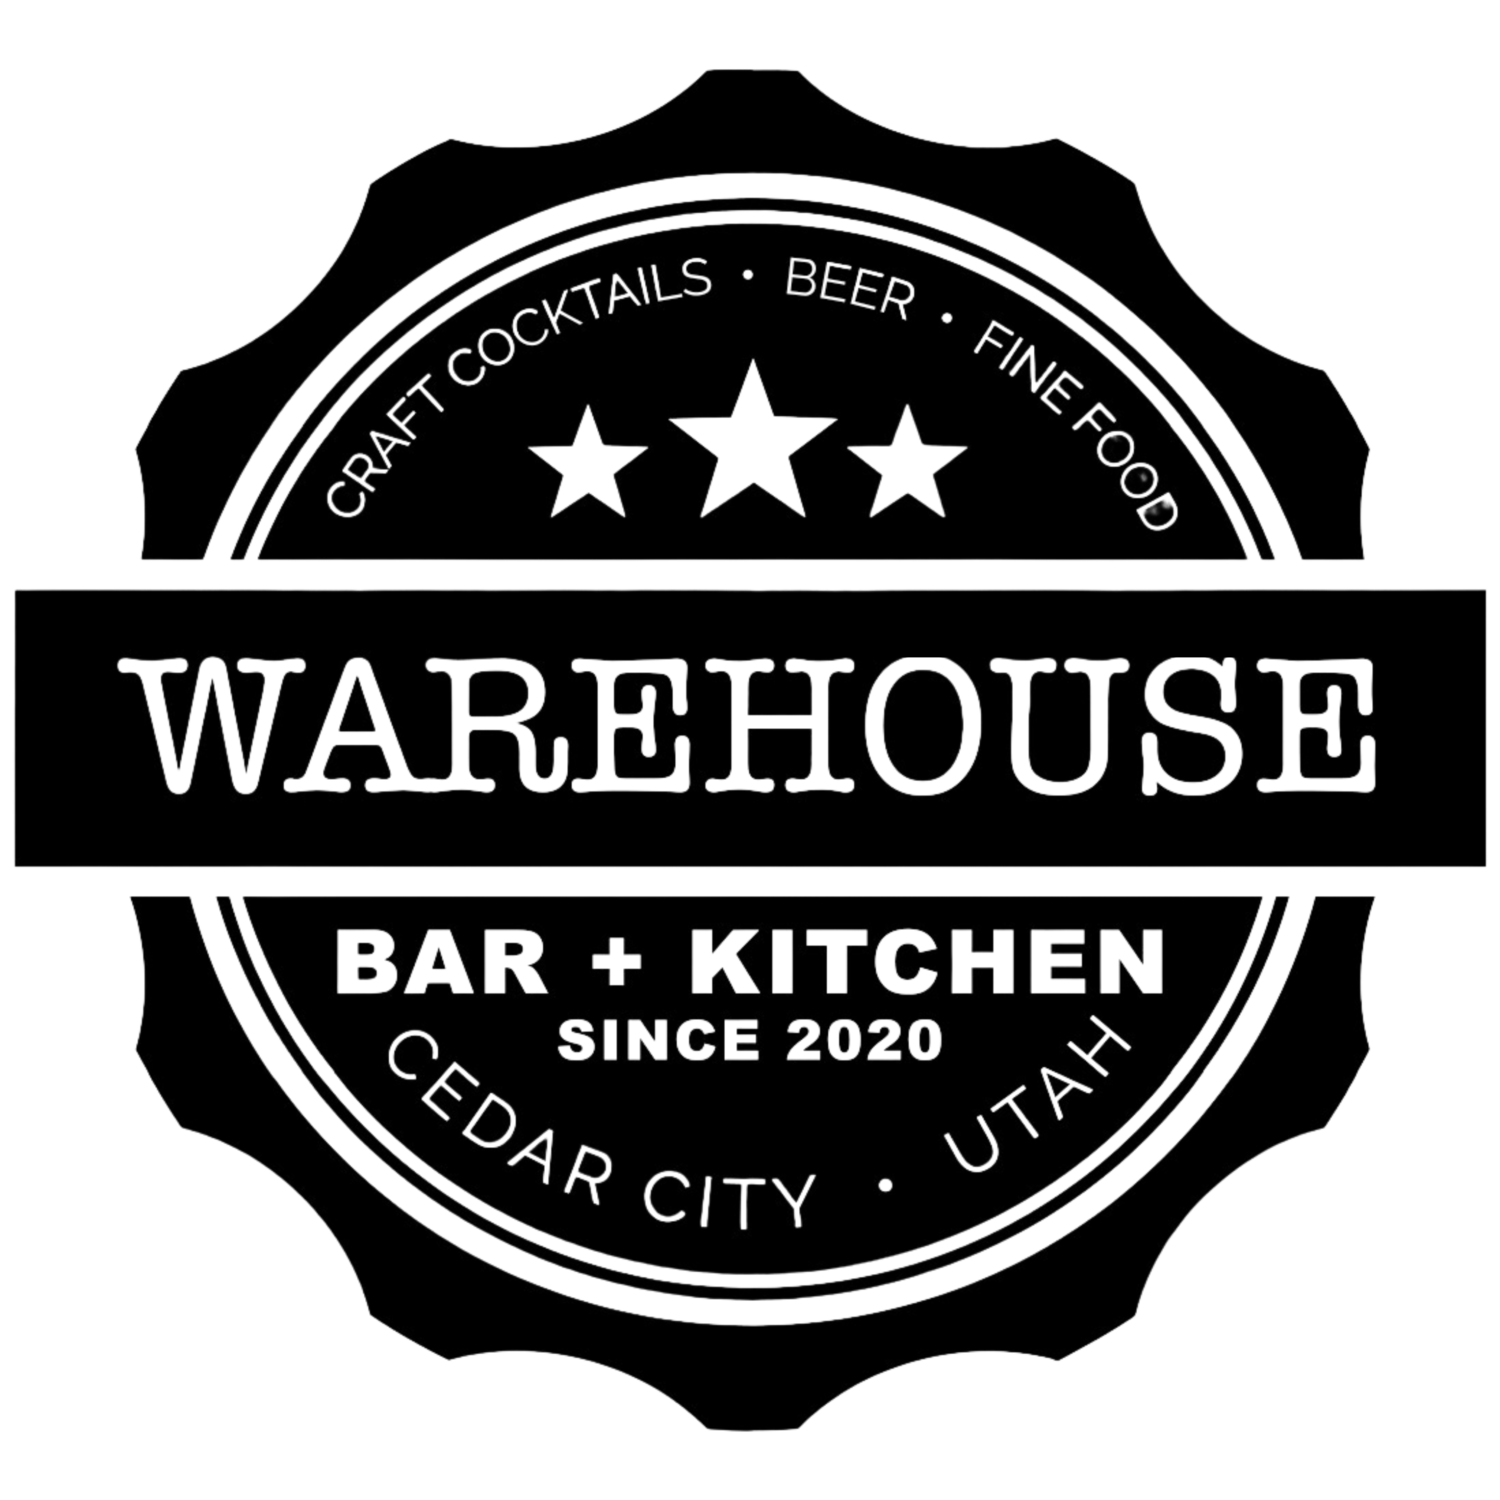 Warehouse Bar + Kitchen